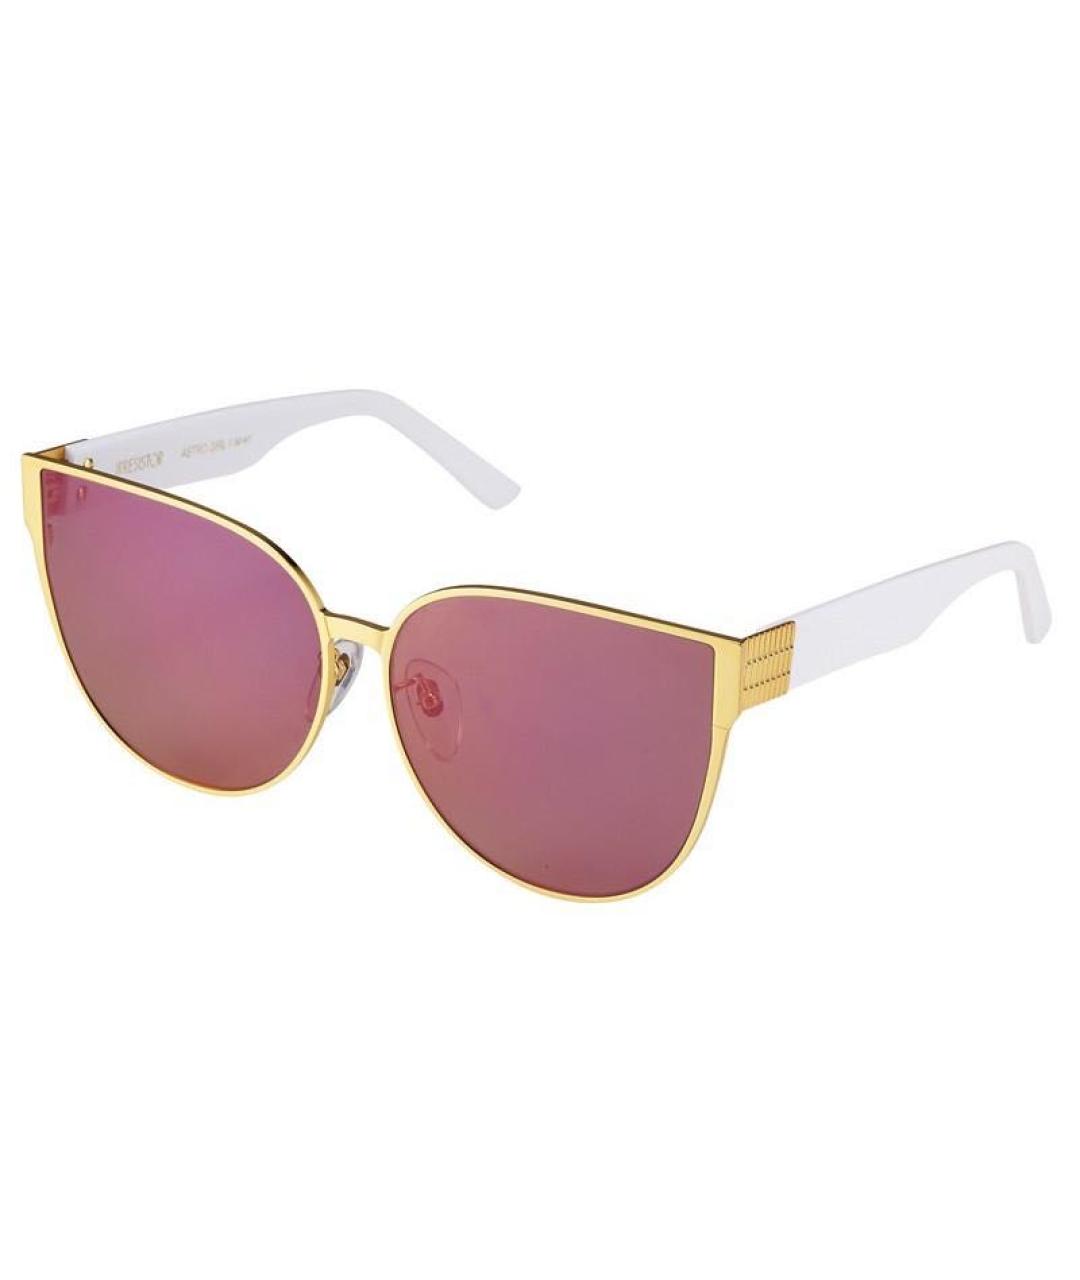 IRRESISTOR Розовые металлические солнцезащитные очки, фото 1